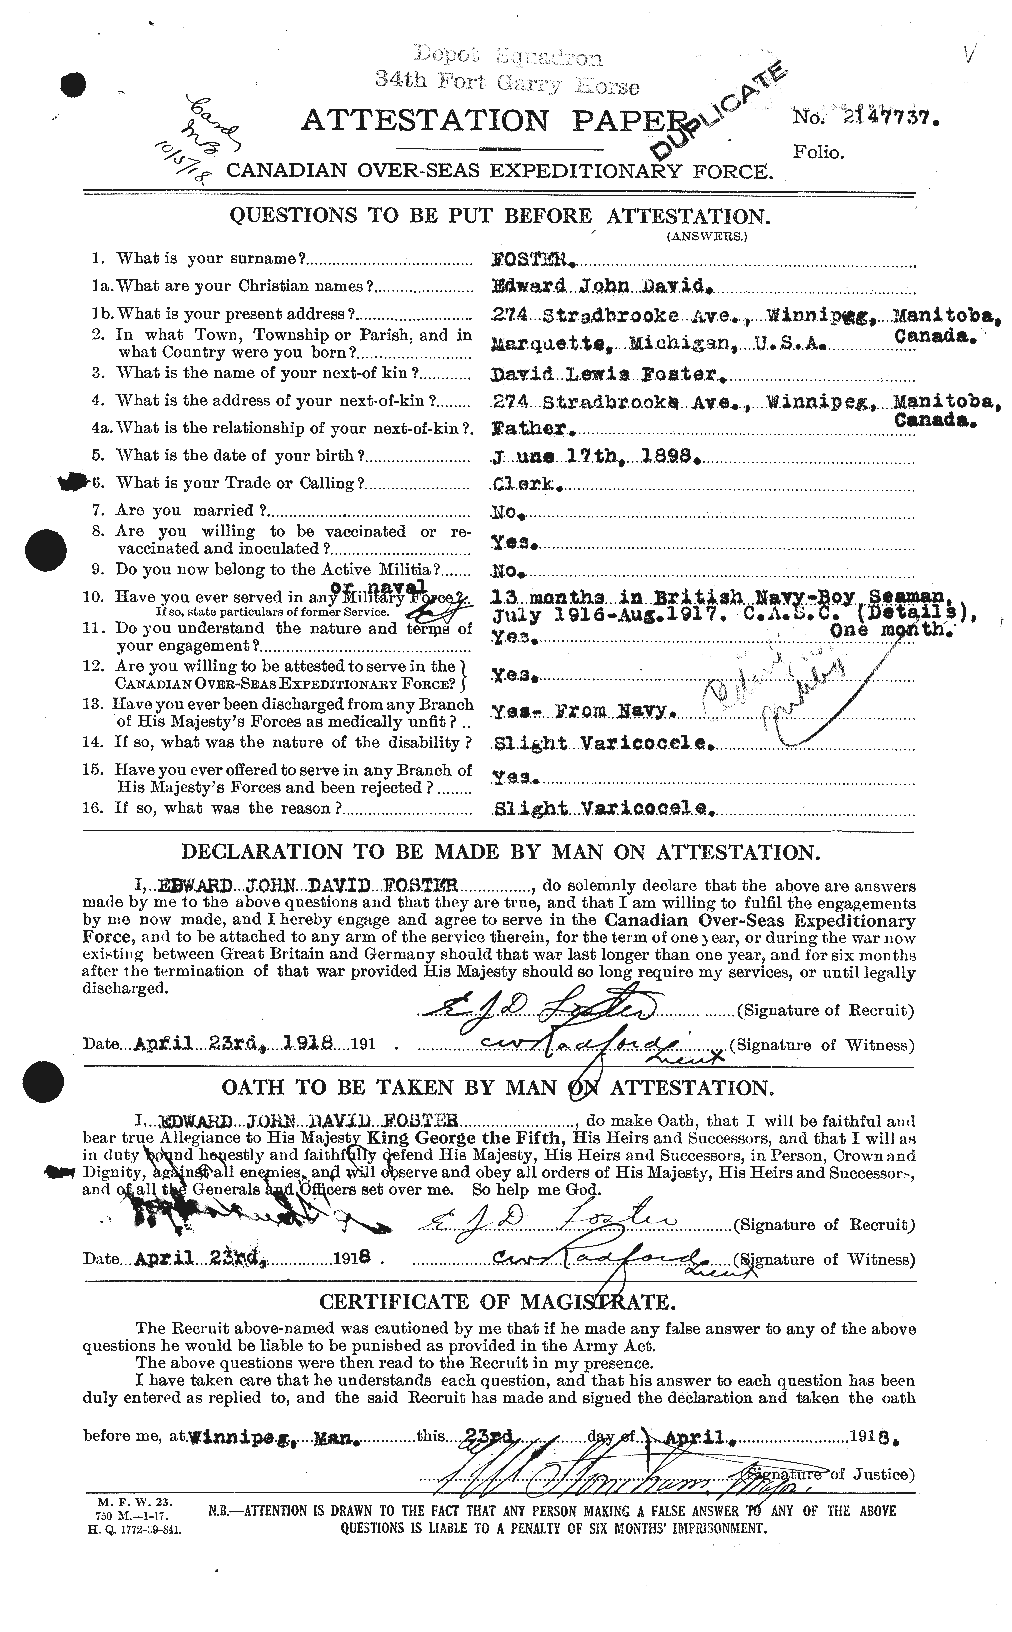 Dossiers du Personnel de la Première Guerre mondiale - CEC 330583a